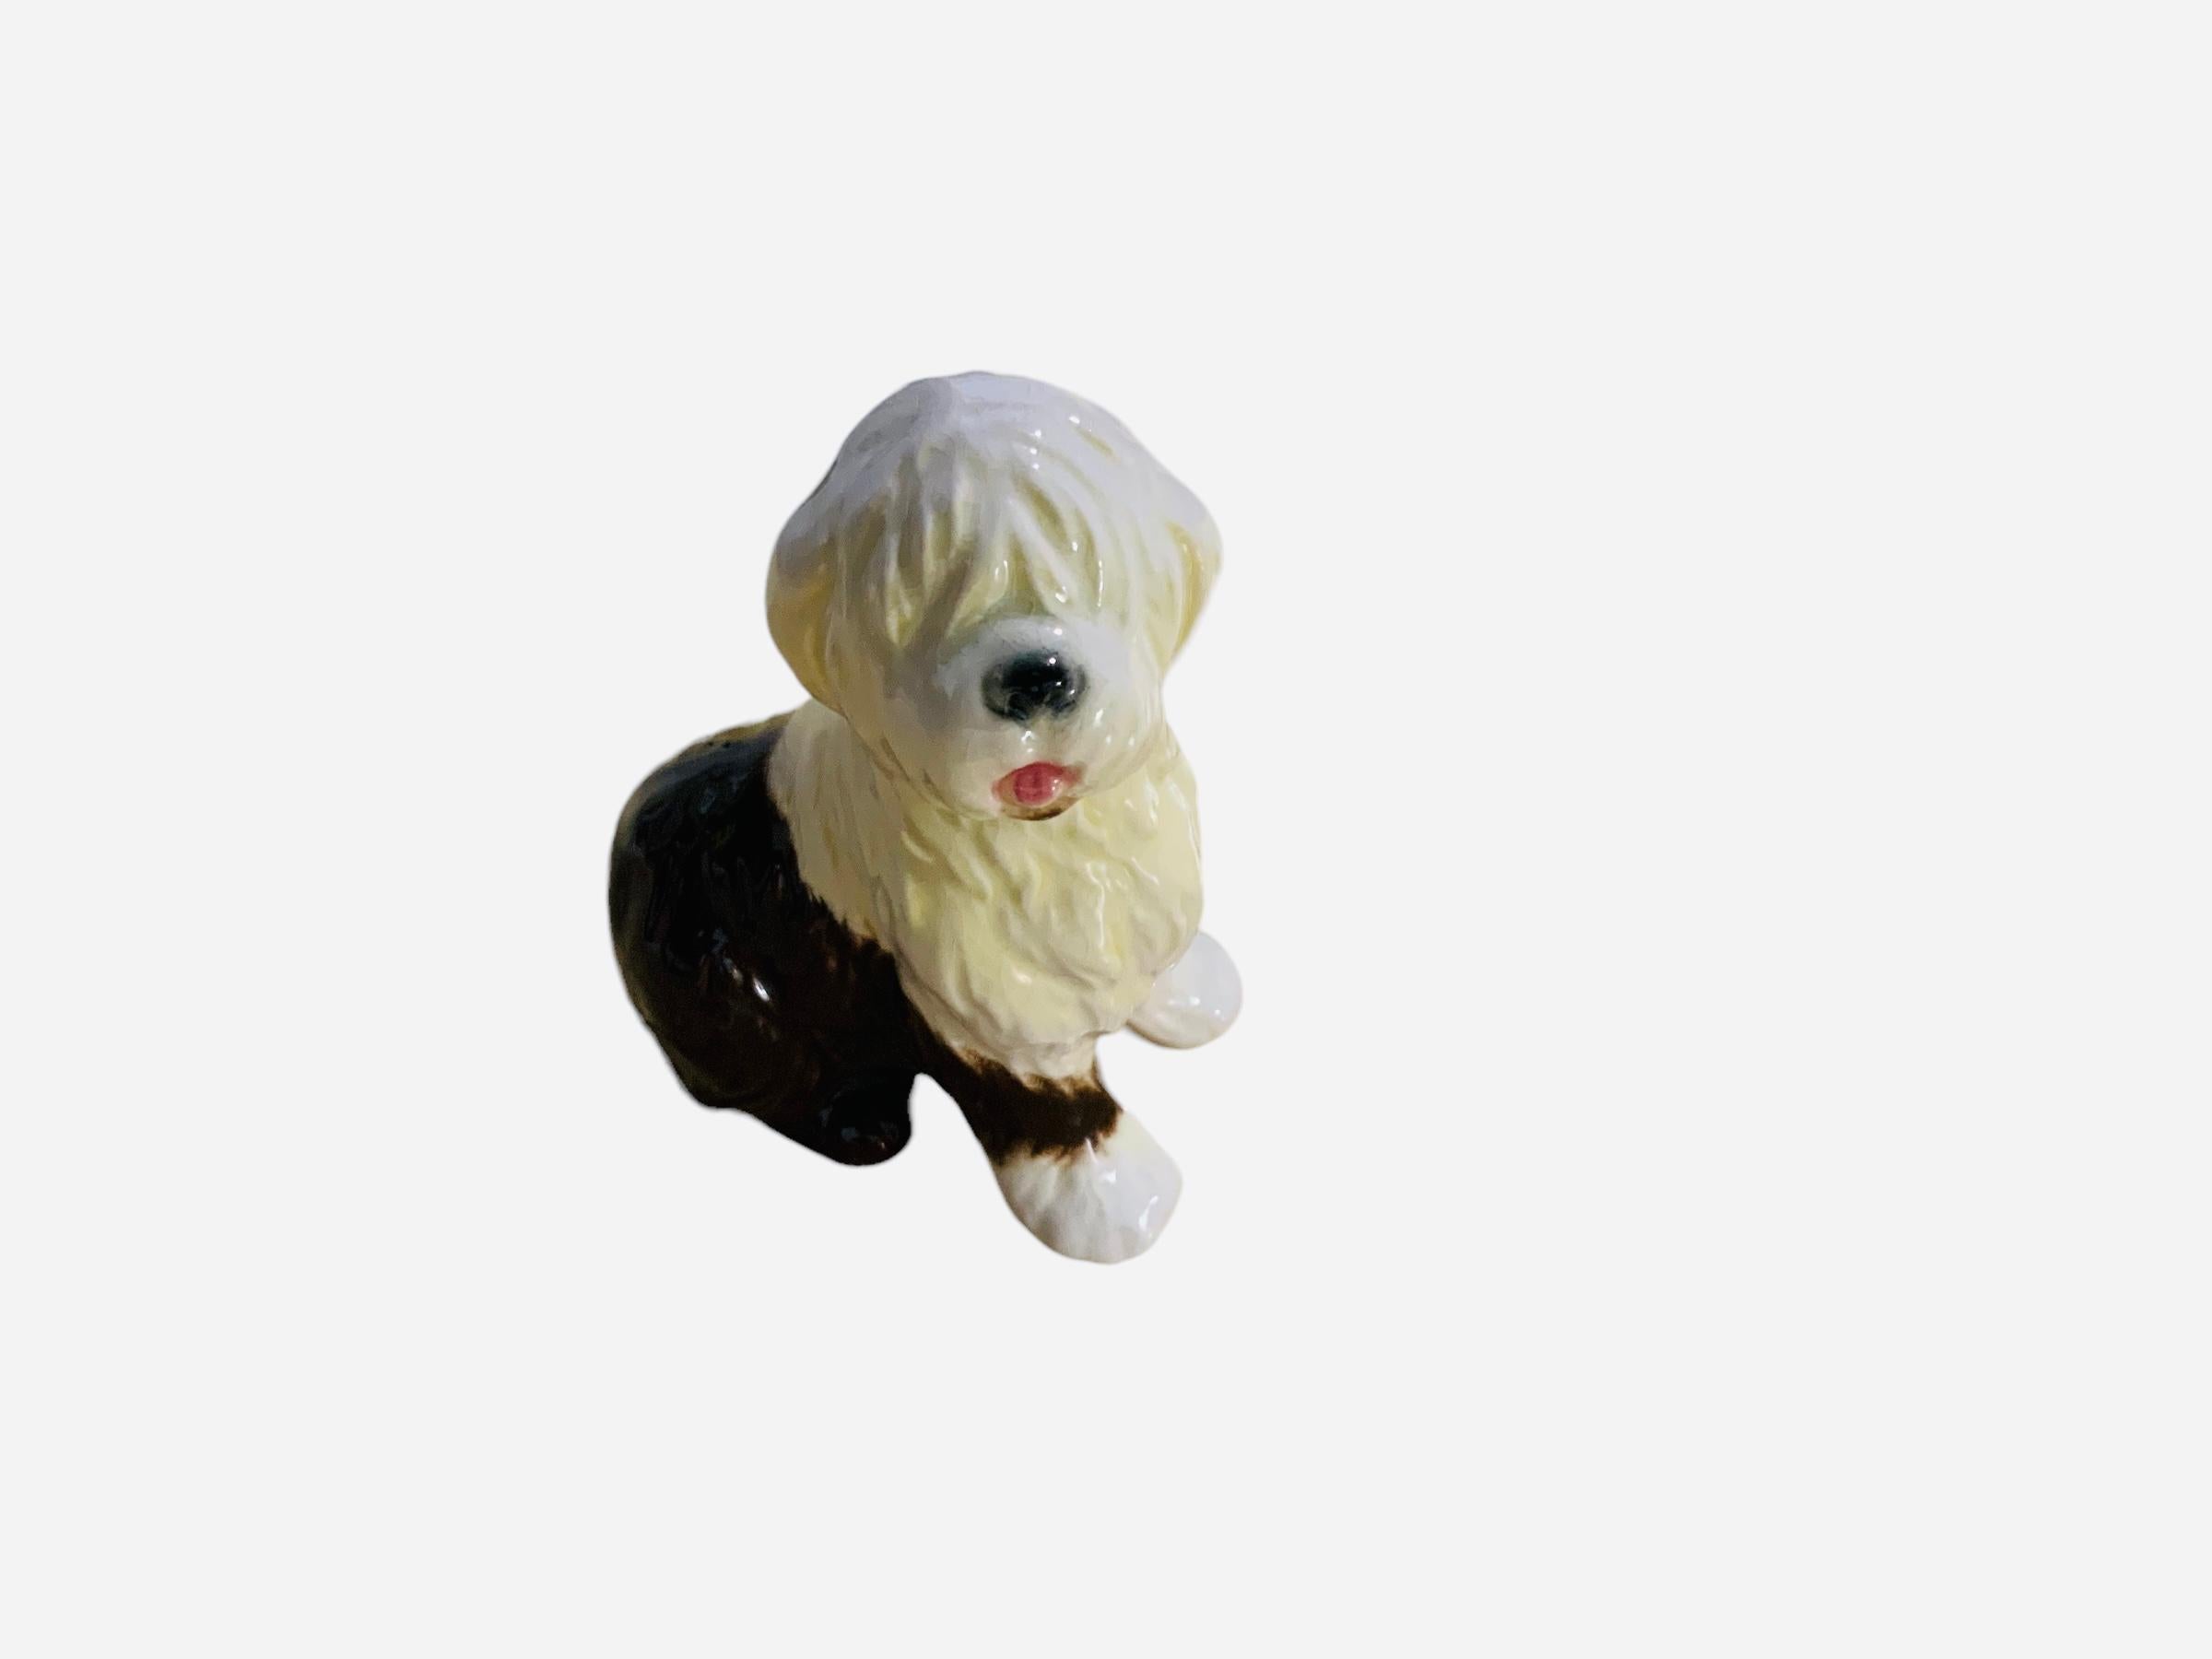 Il s'agit d'une figurine en porcelaine de Goeble représentant un chien. Il représente un adorable chien de berger anglais ancien peint à la main, debout et plein de poils blancs et marron foncé. Le poinçon de Goeble se trouve sous la figurine.